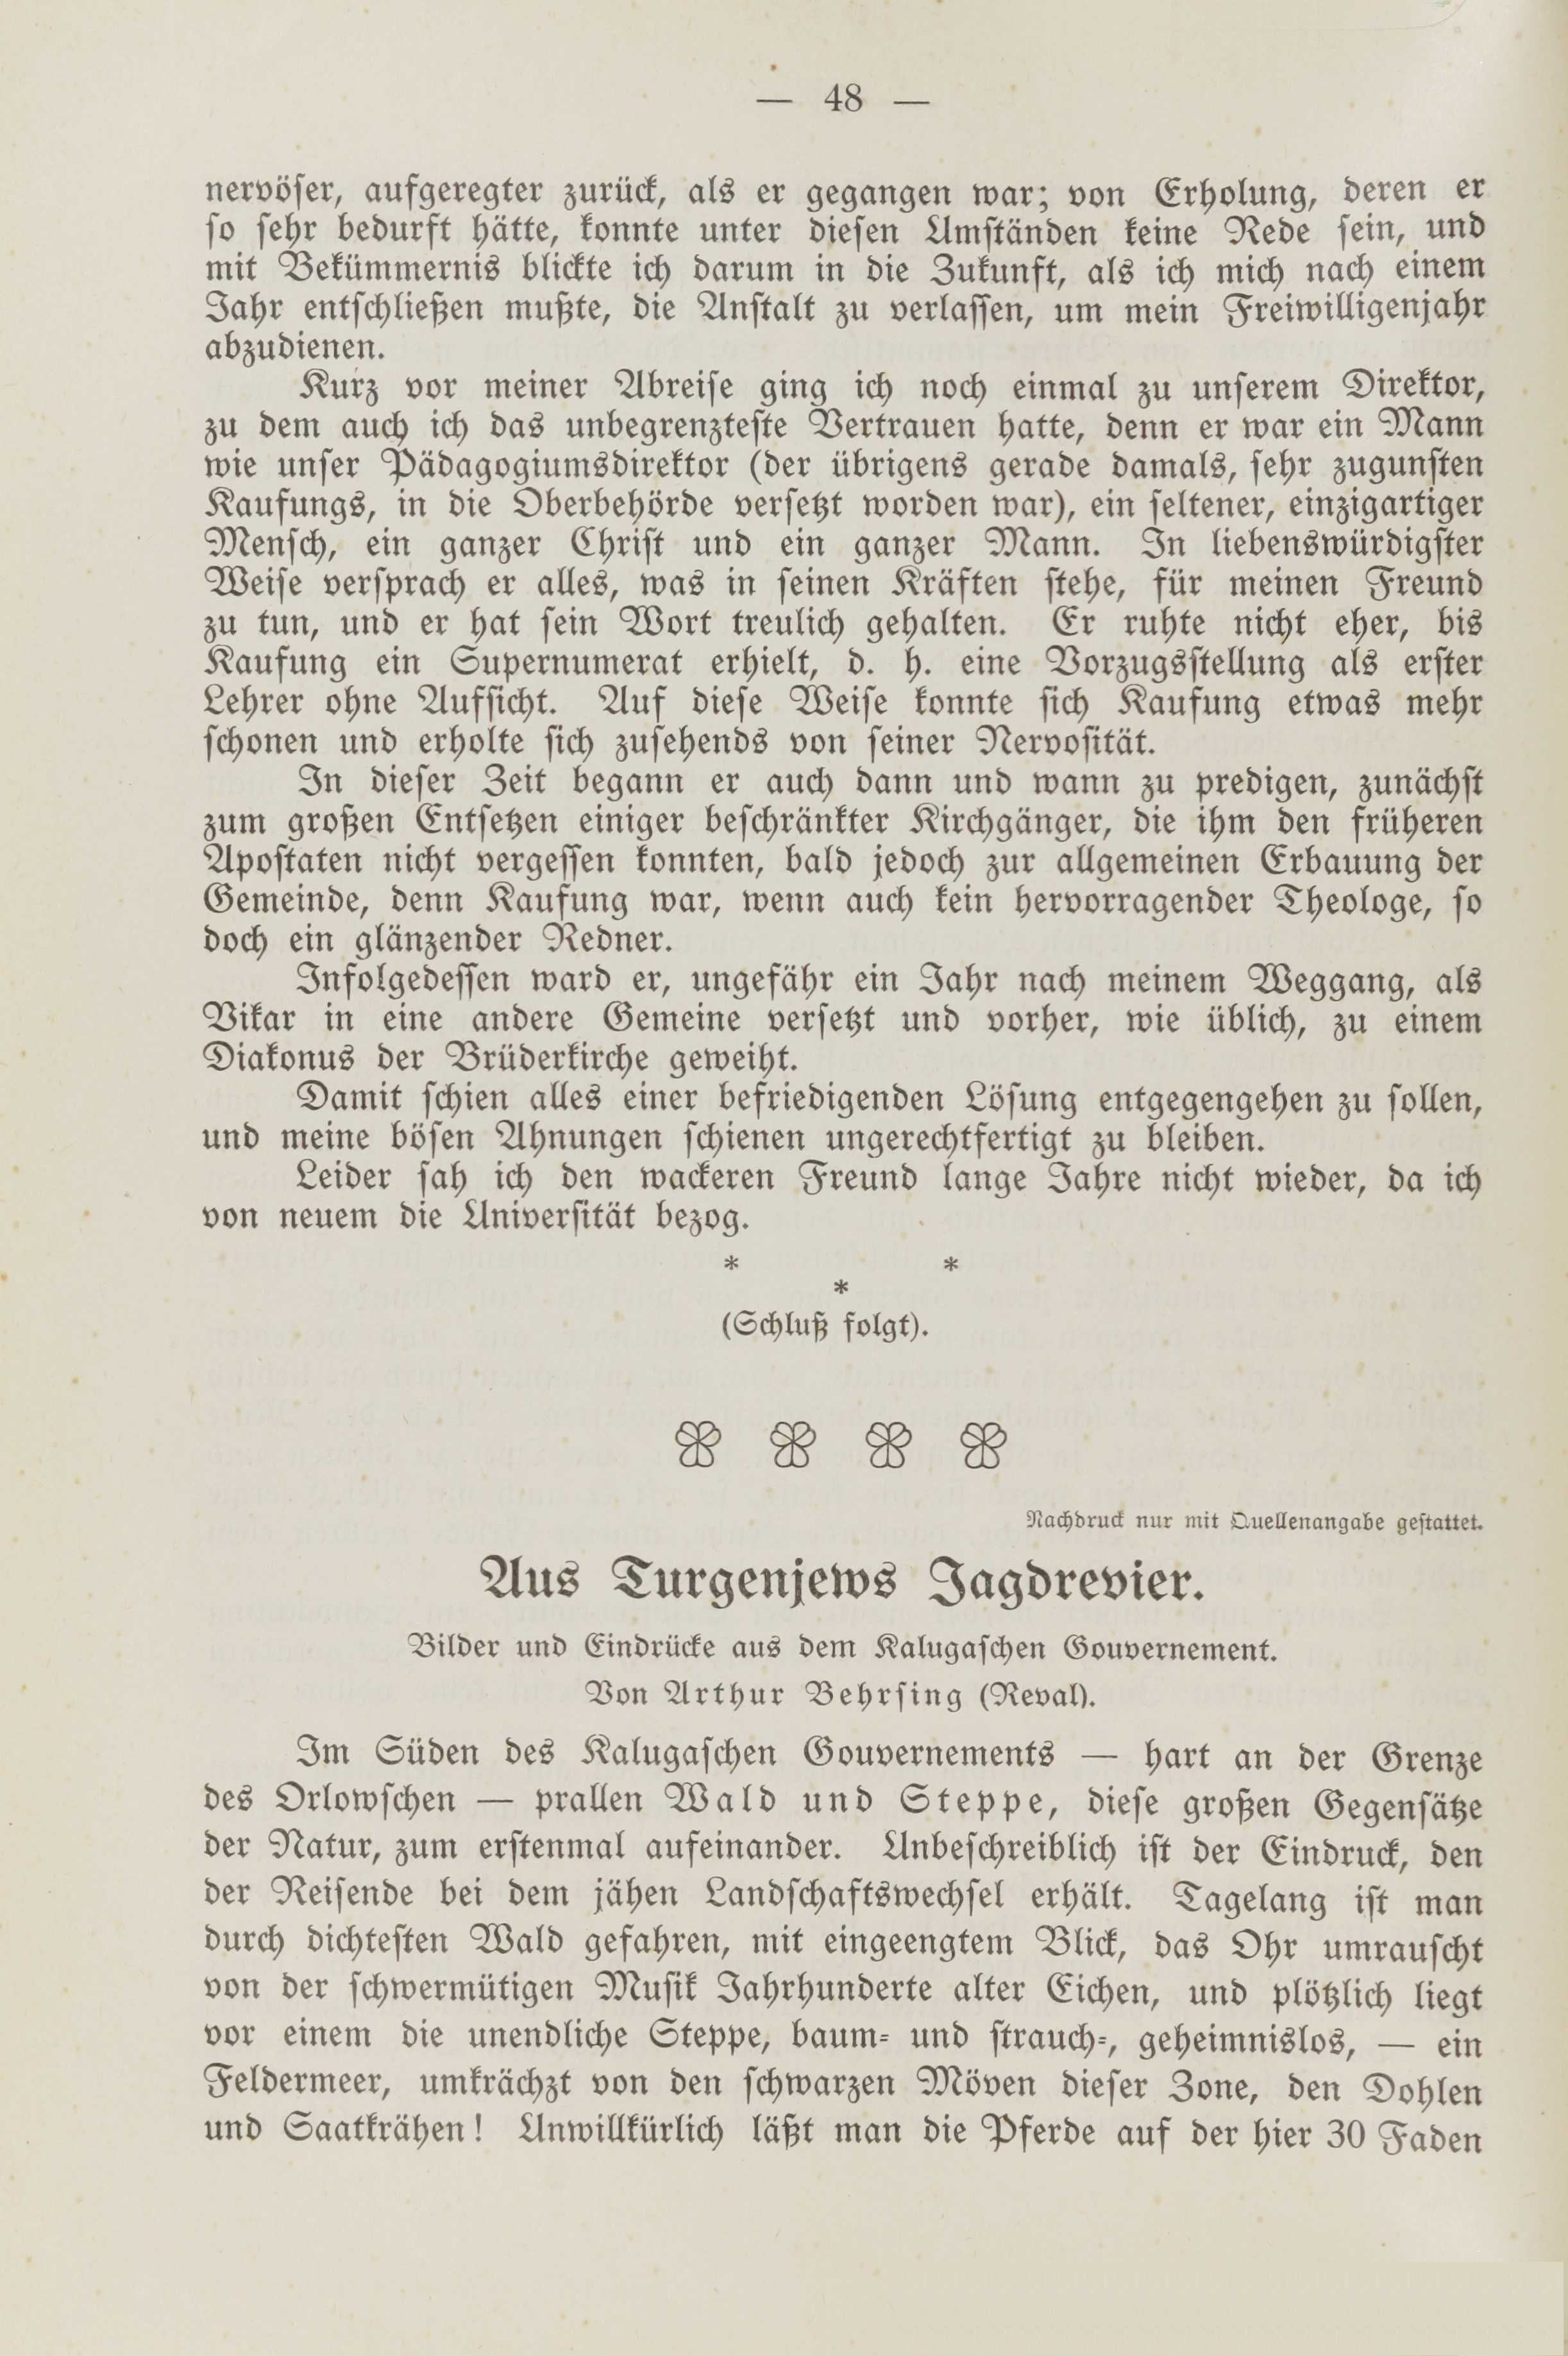 Deutsche Monatsschrift für Russland [2] (1913) | 52. (48) Main body of text